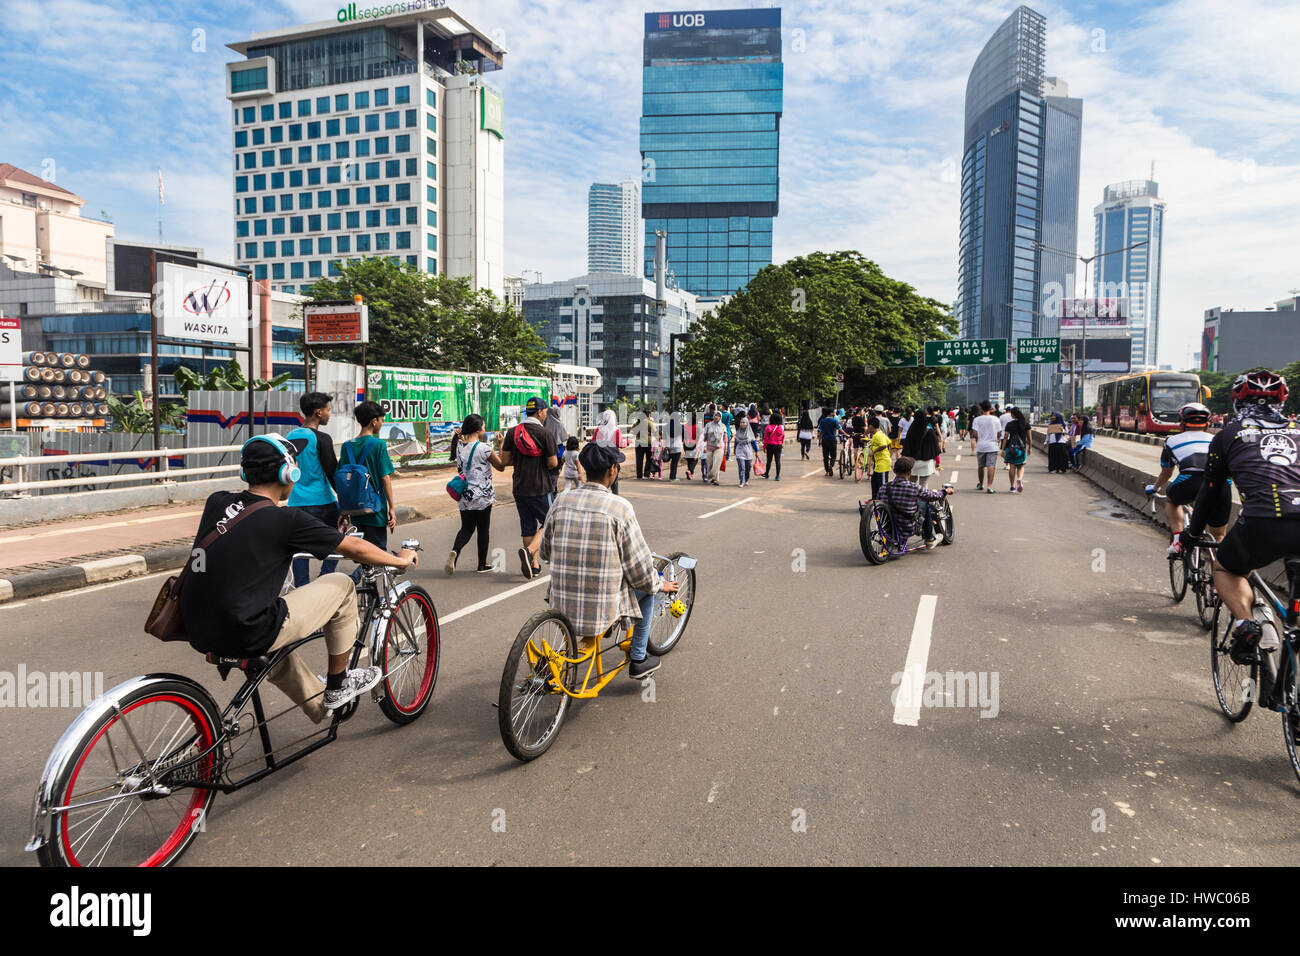 JAKARTA, Indonesien - 25. September 2016: Radfahrer genießen ihre  maßgeschneiderte Reiten Fahrrad auf autofreien Tag, was, jeden Sonntag  Morgen auf die Sudi passiert Stockfotografie - Alamy